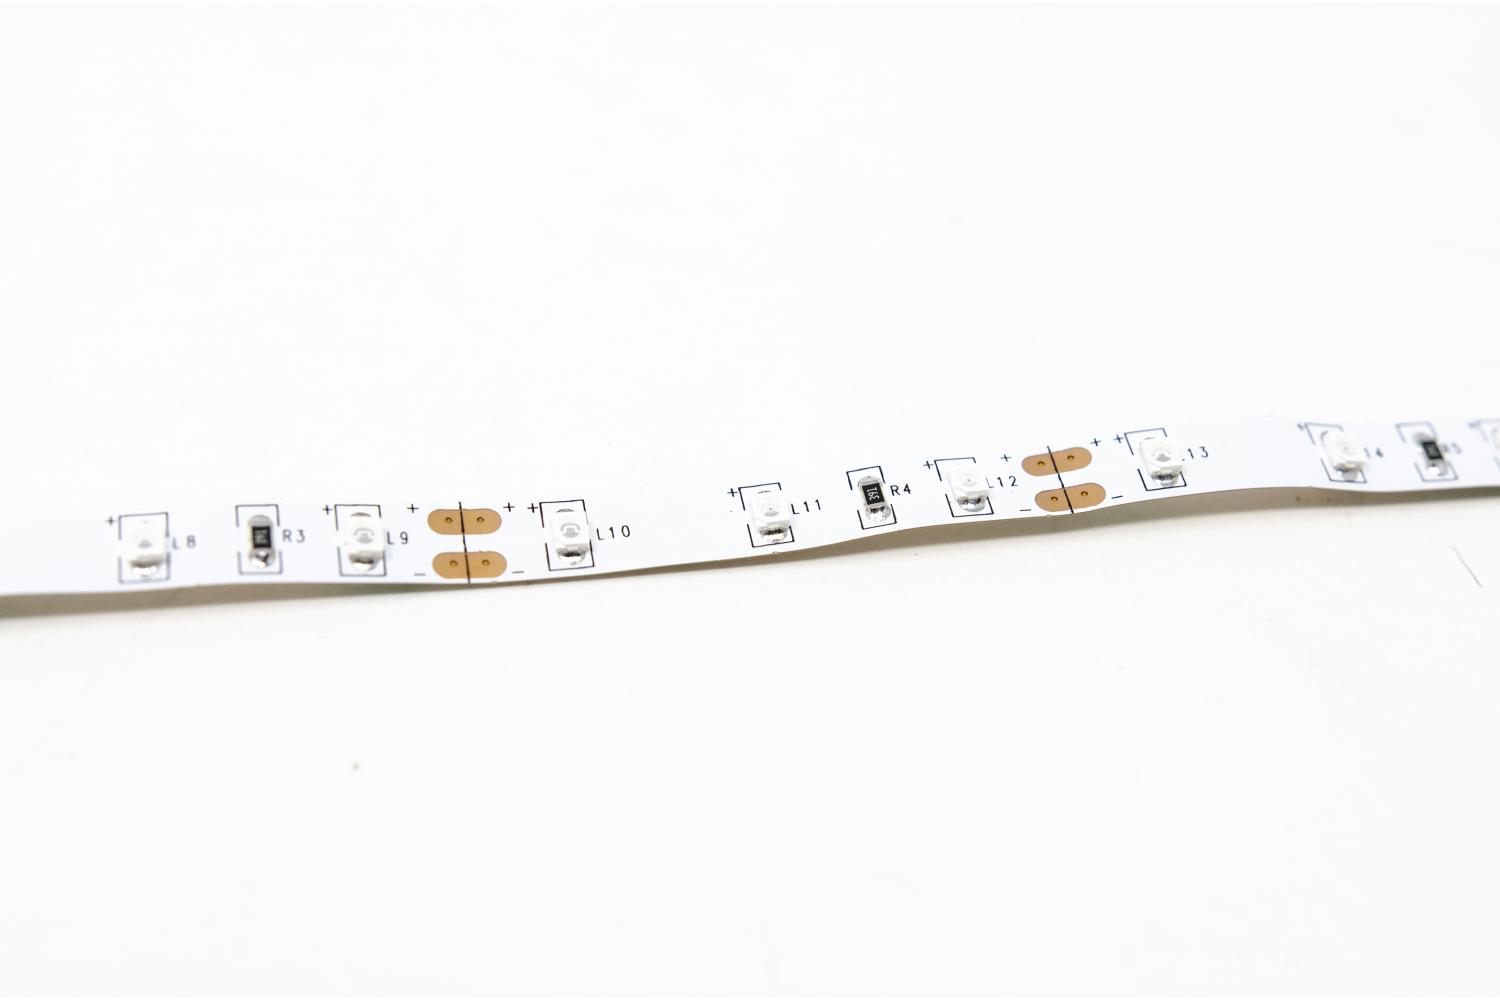  LSPK21 - Strisce LED Presepe, Accessori 2,1 mm